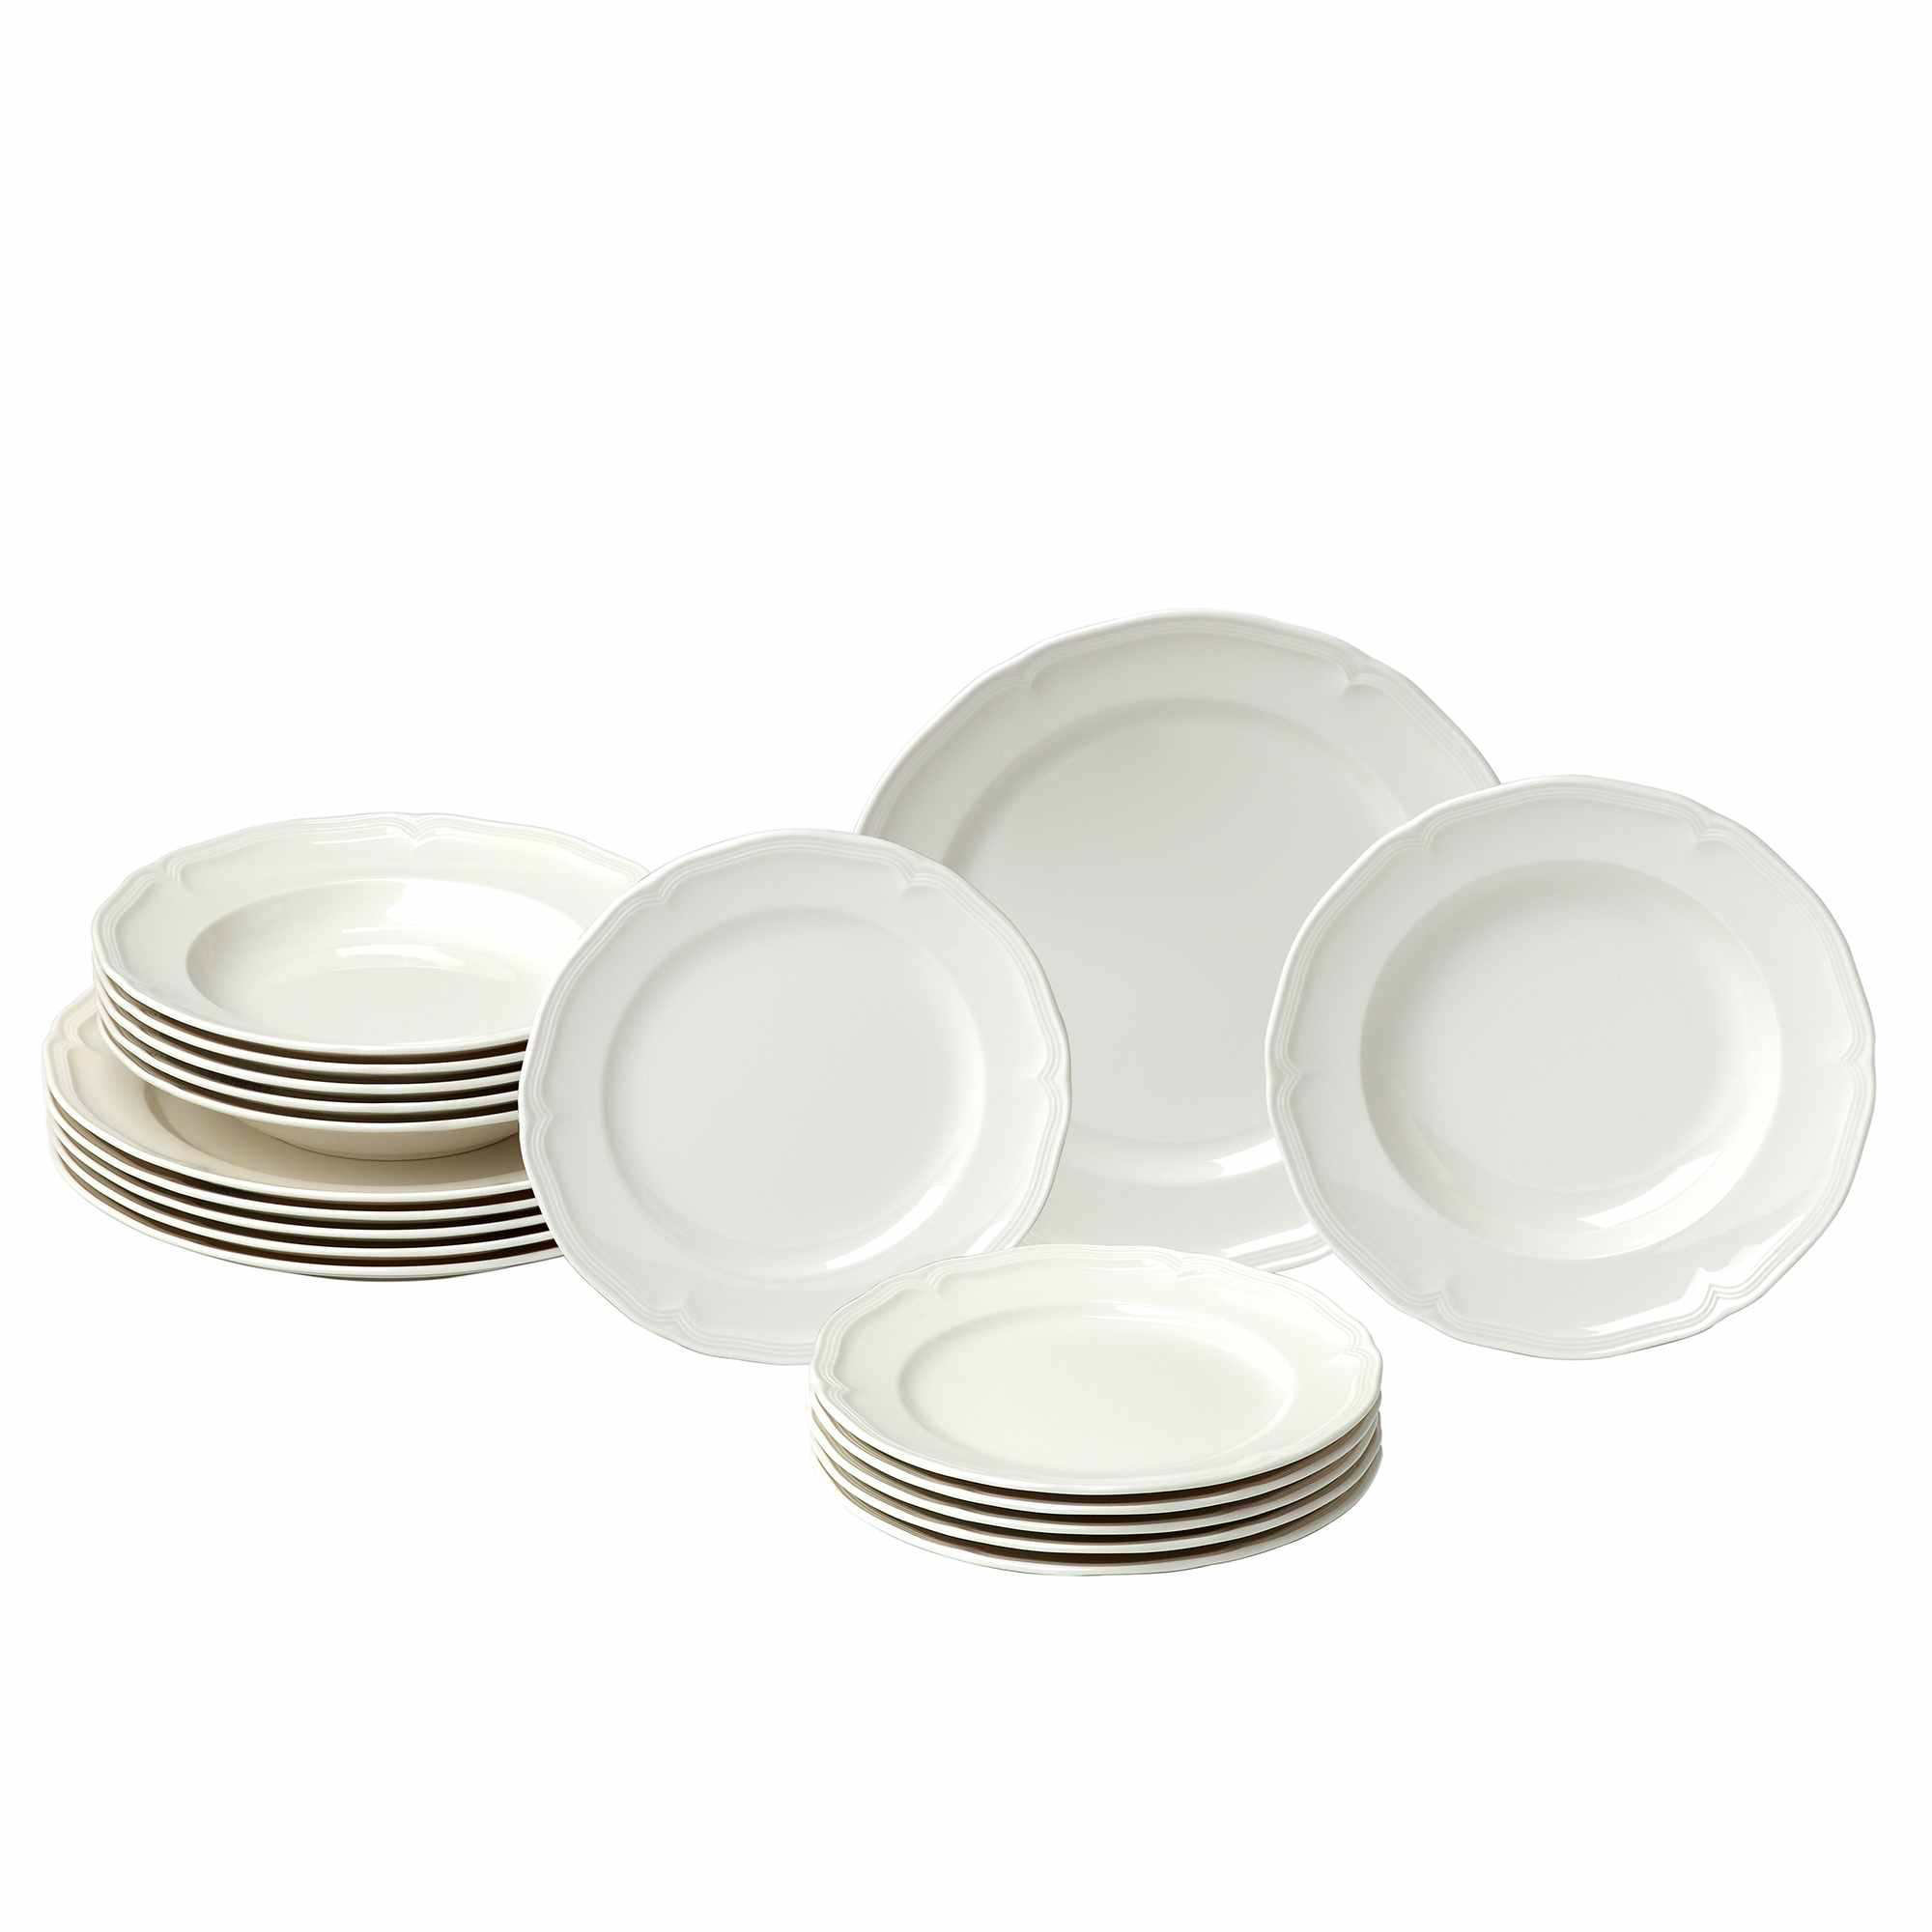 Rusland meloen Straat Villeroy & Boch Manoir Porcelain China Dinnerware Set - Service for 6 &  Reviews | Wayfair